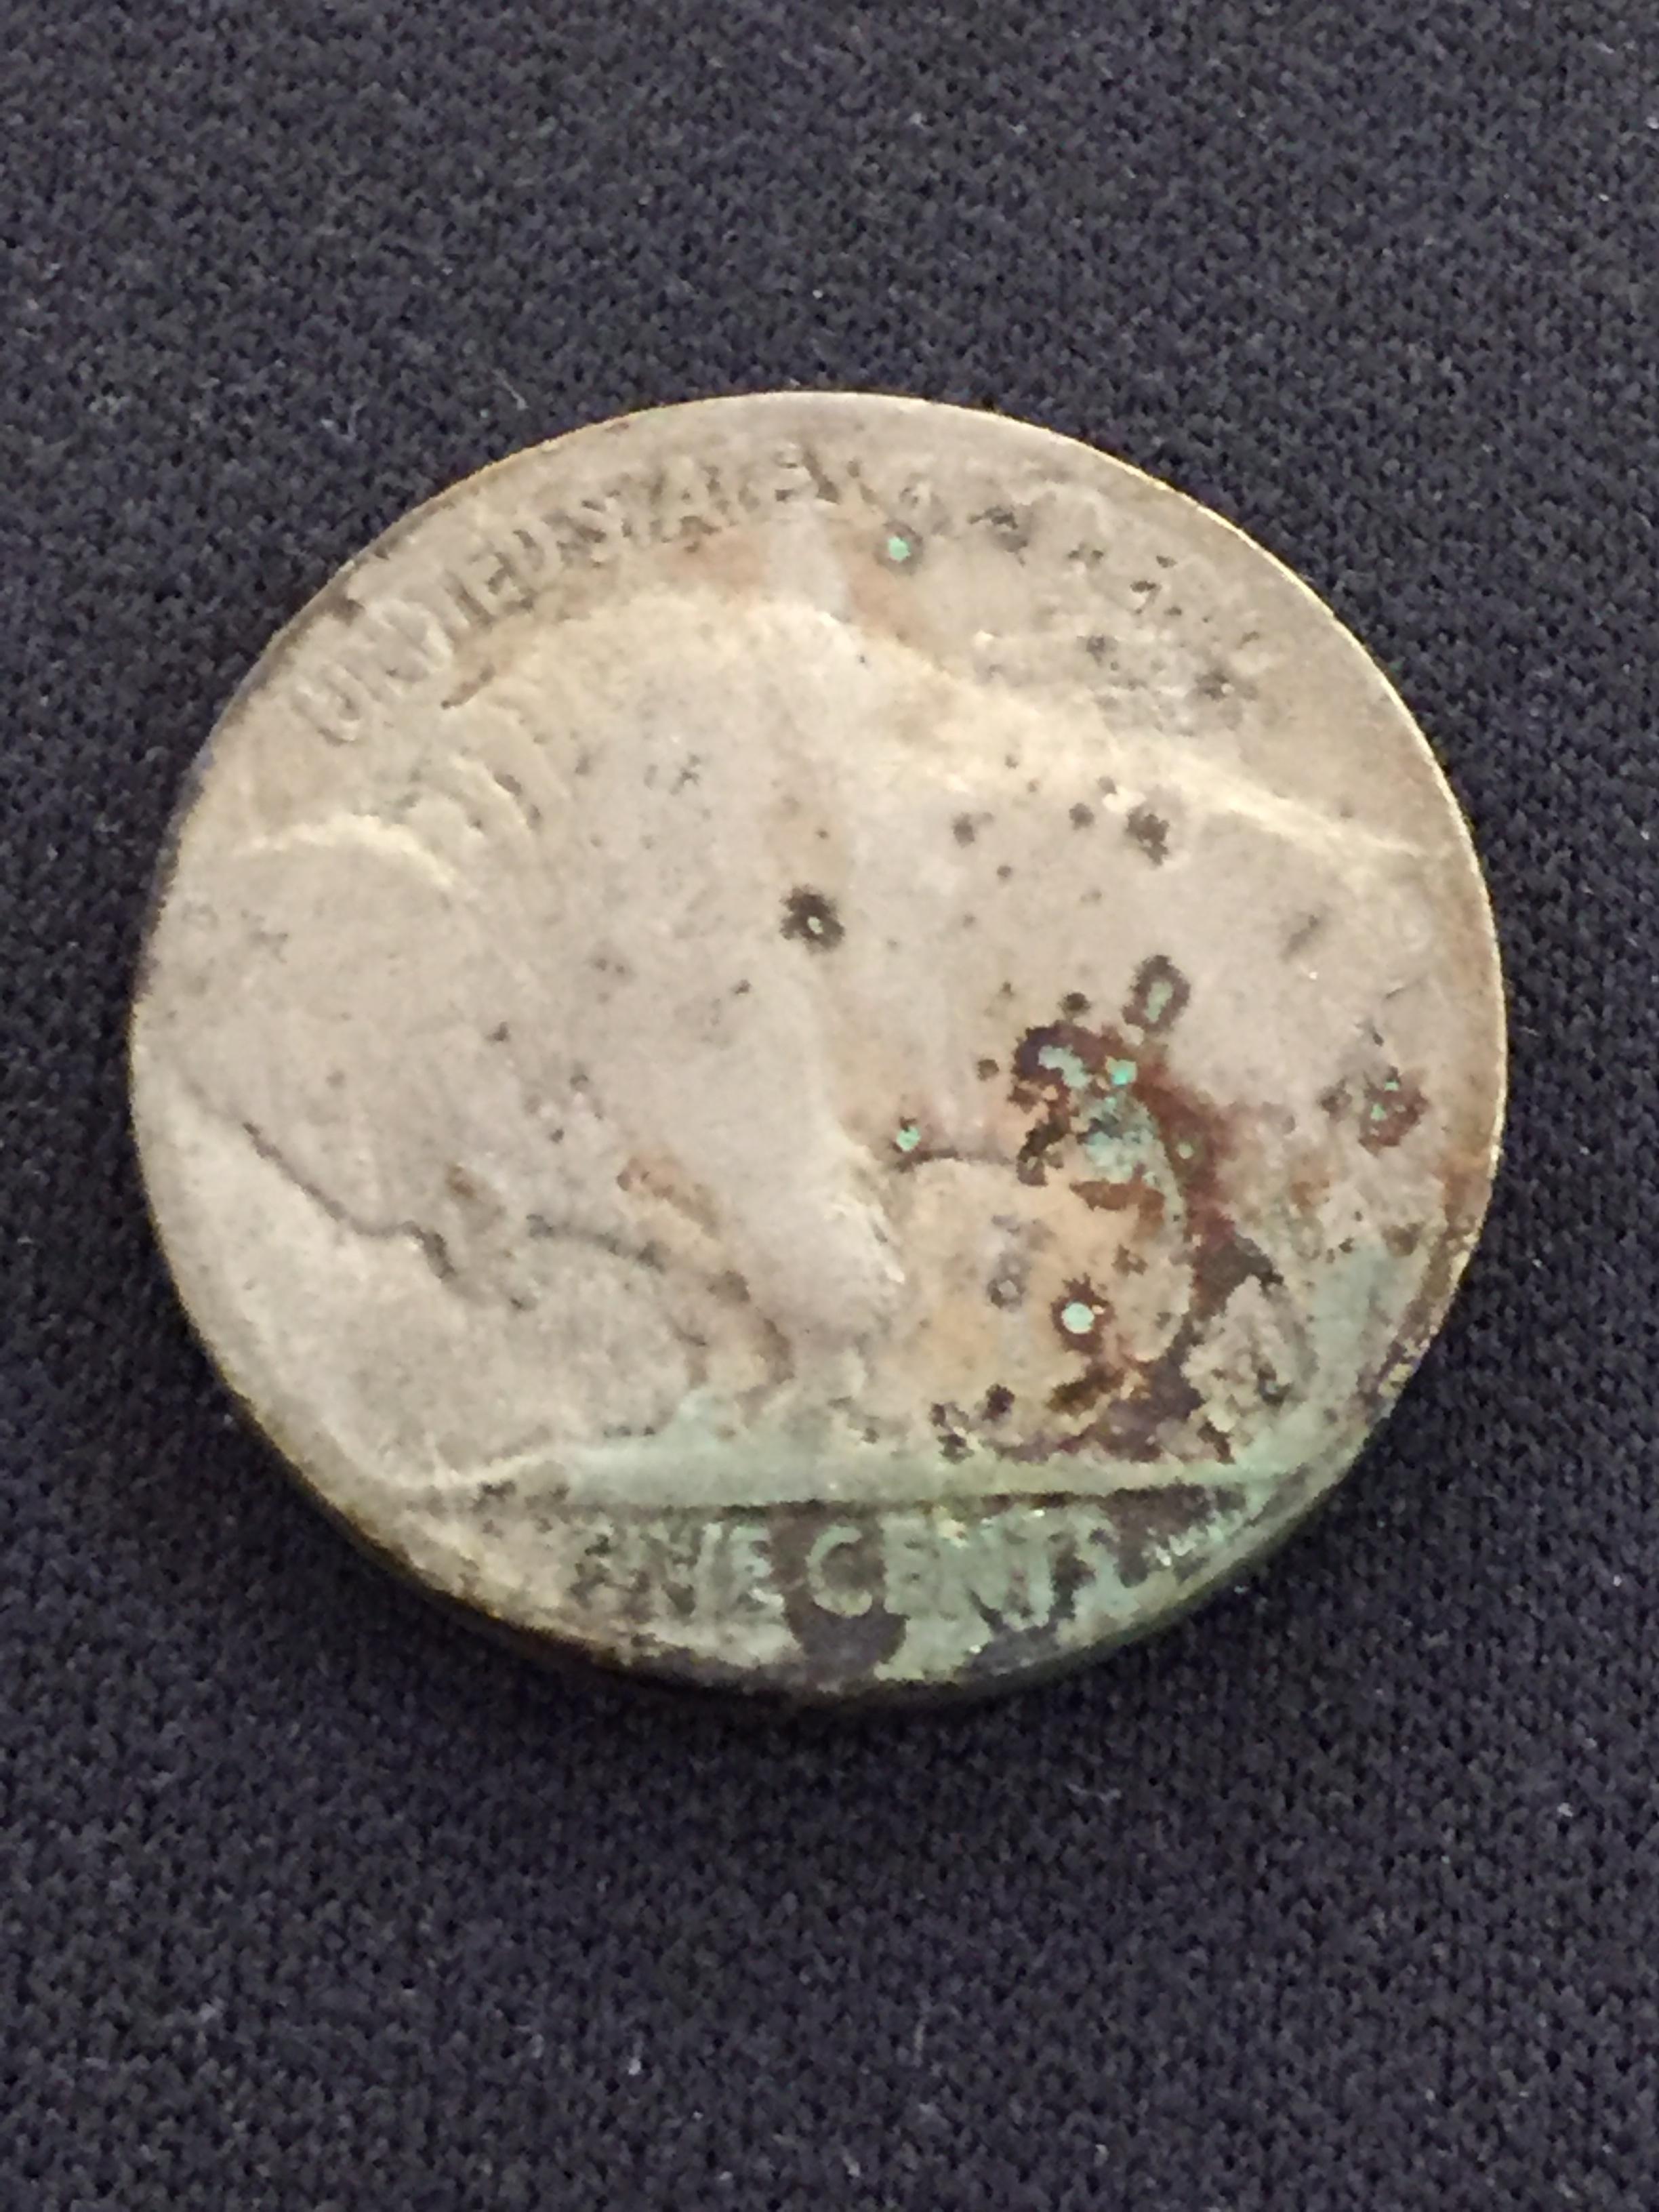 1930 United States Buffalo Nickel